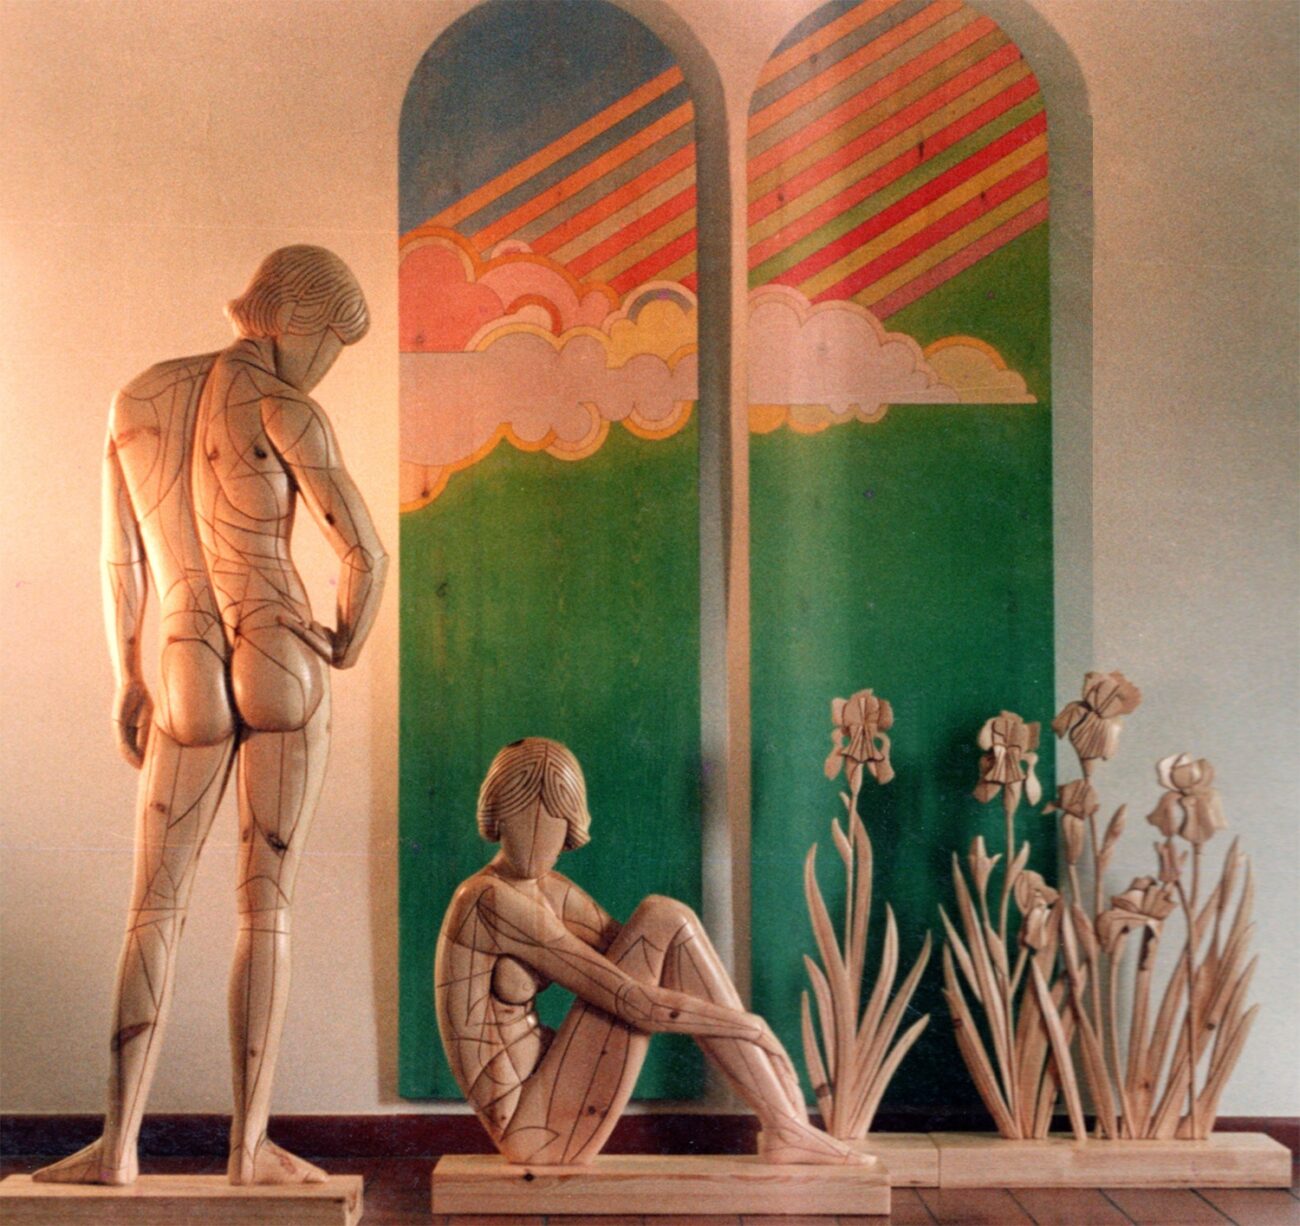 98 1983 uomo, donna, iris e cielo sculture lignee e pannelli dipinti